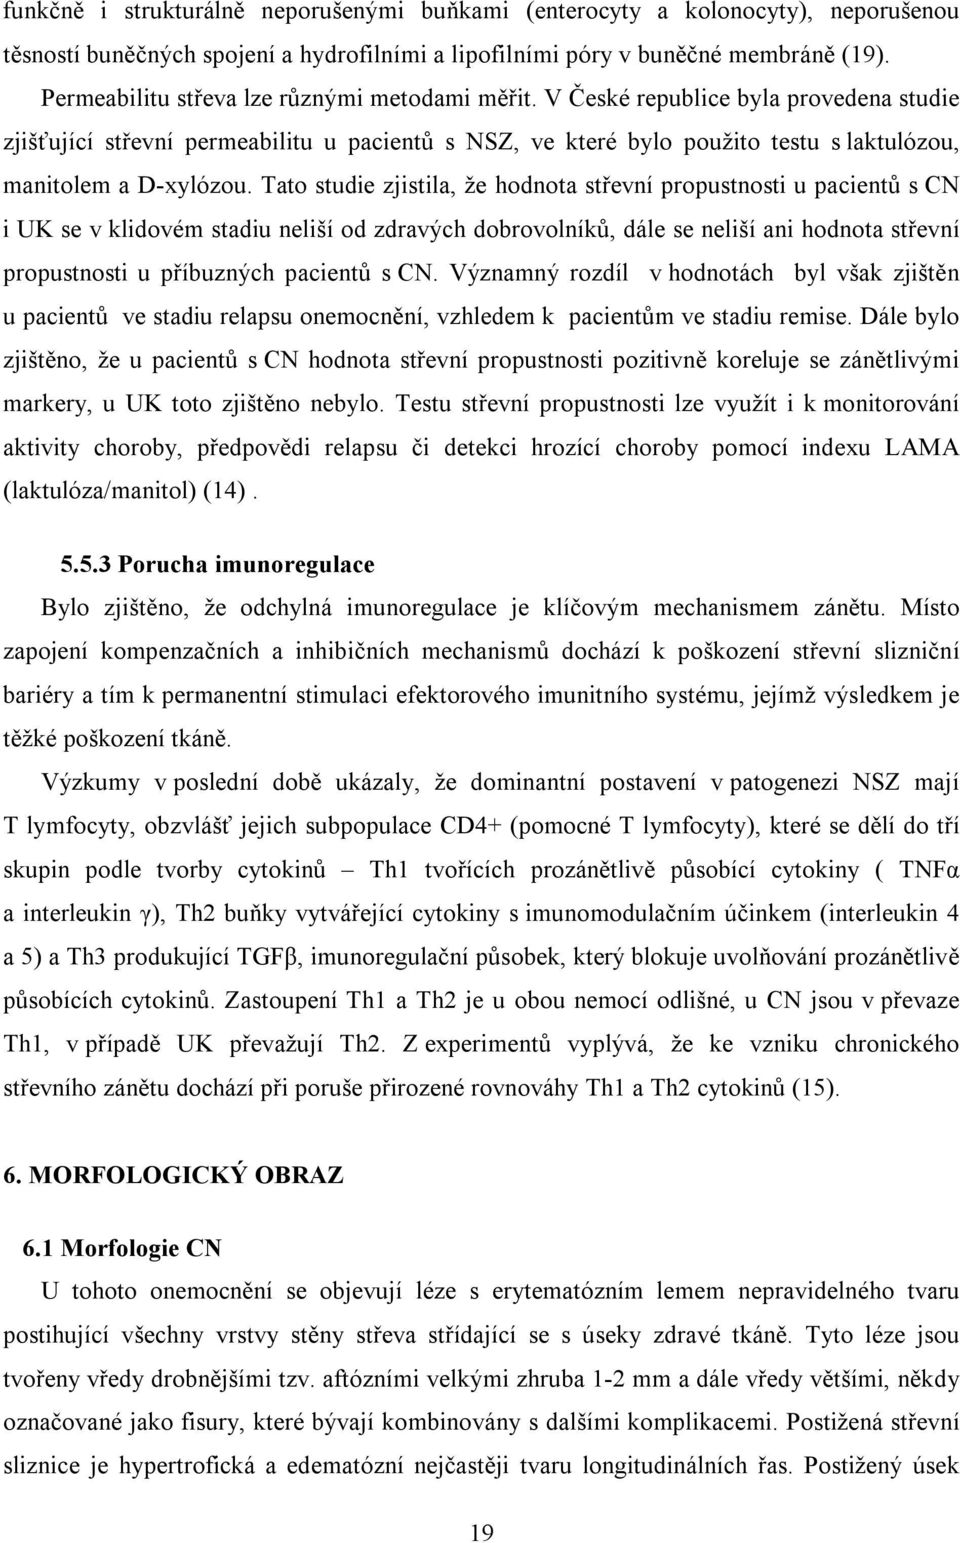 V České republice byla provedena studie zjišťující střevní permeabilitu u pacientů s NSZ, ve které bylo použito testu s laktulózou, manitolem a D-xylózou.